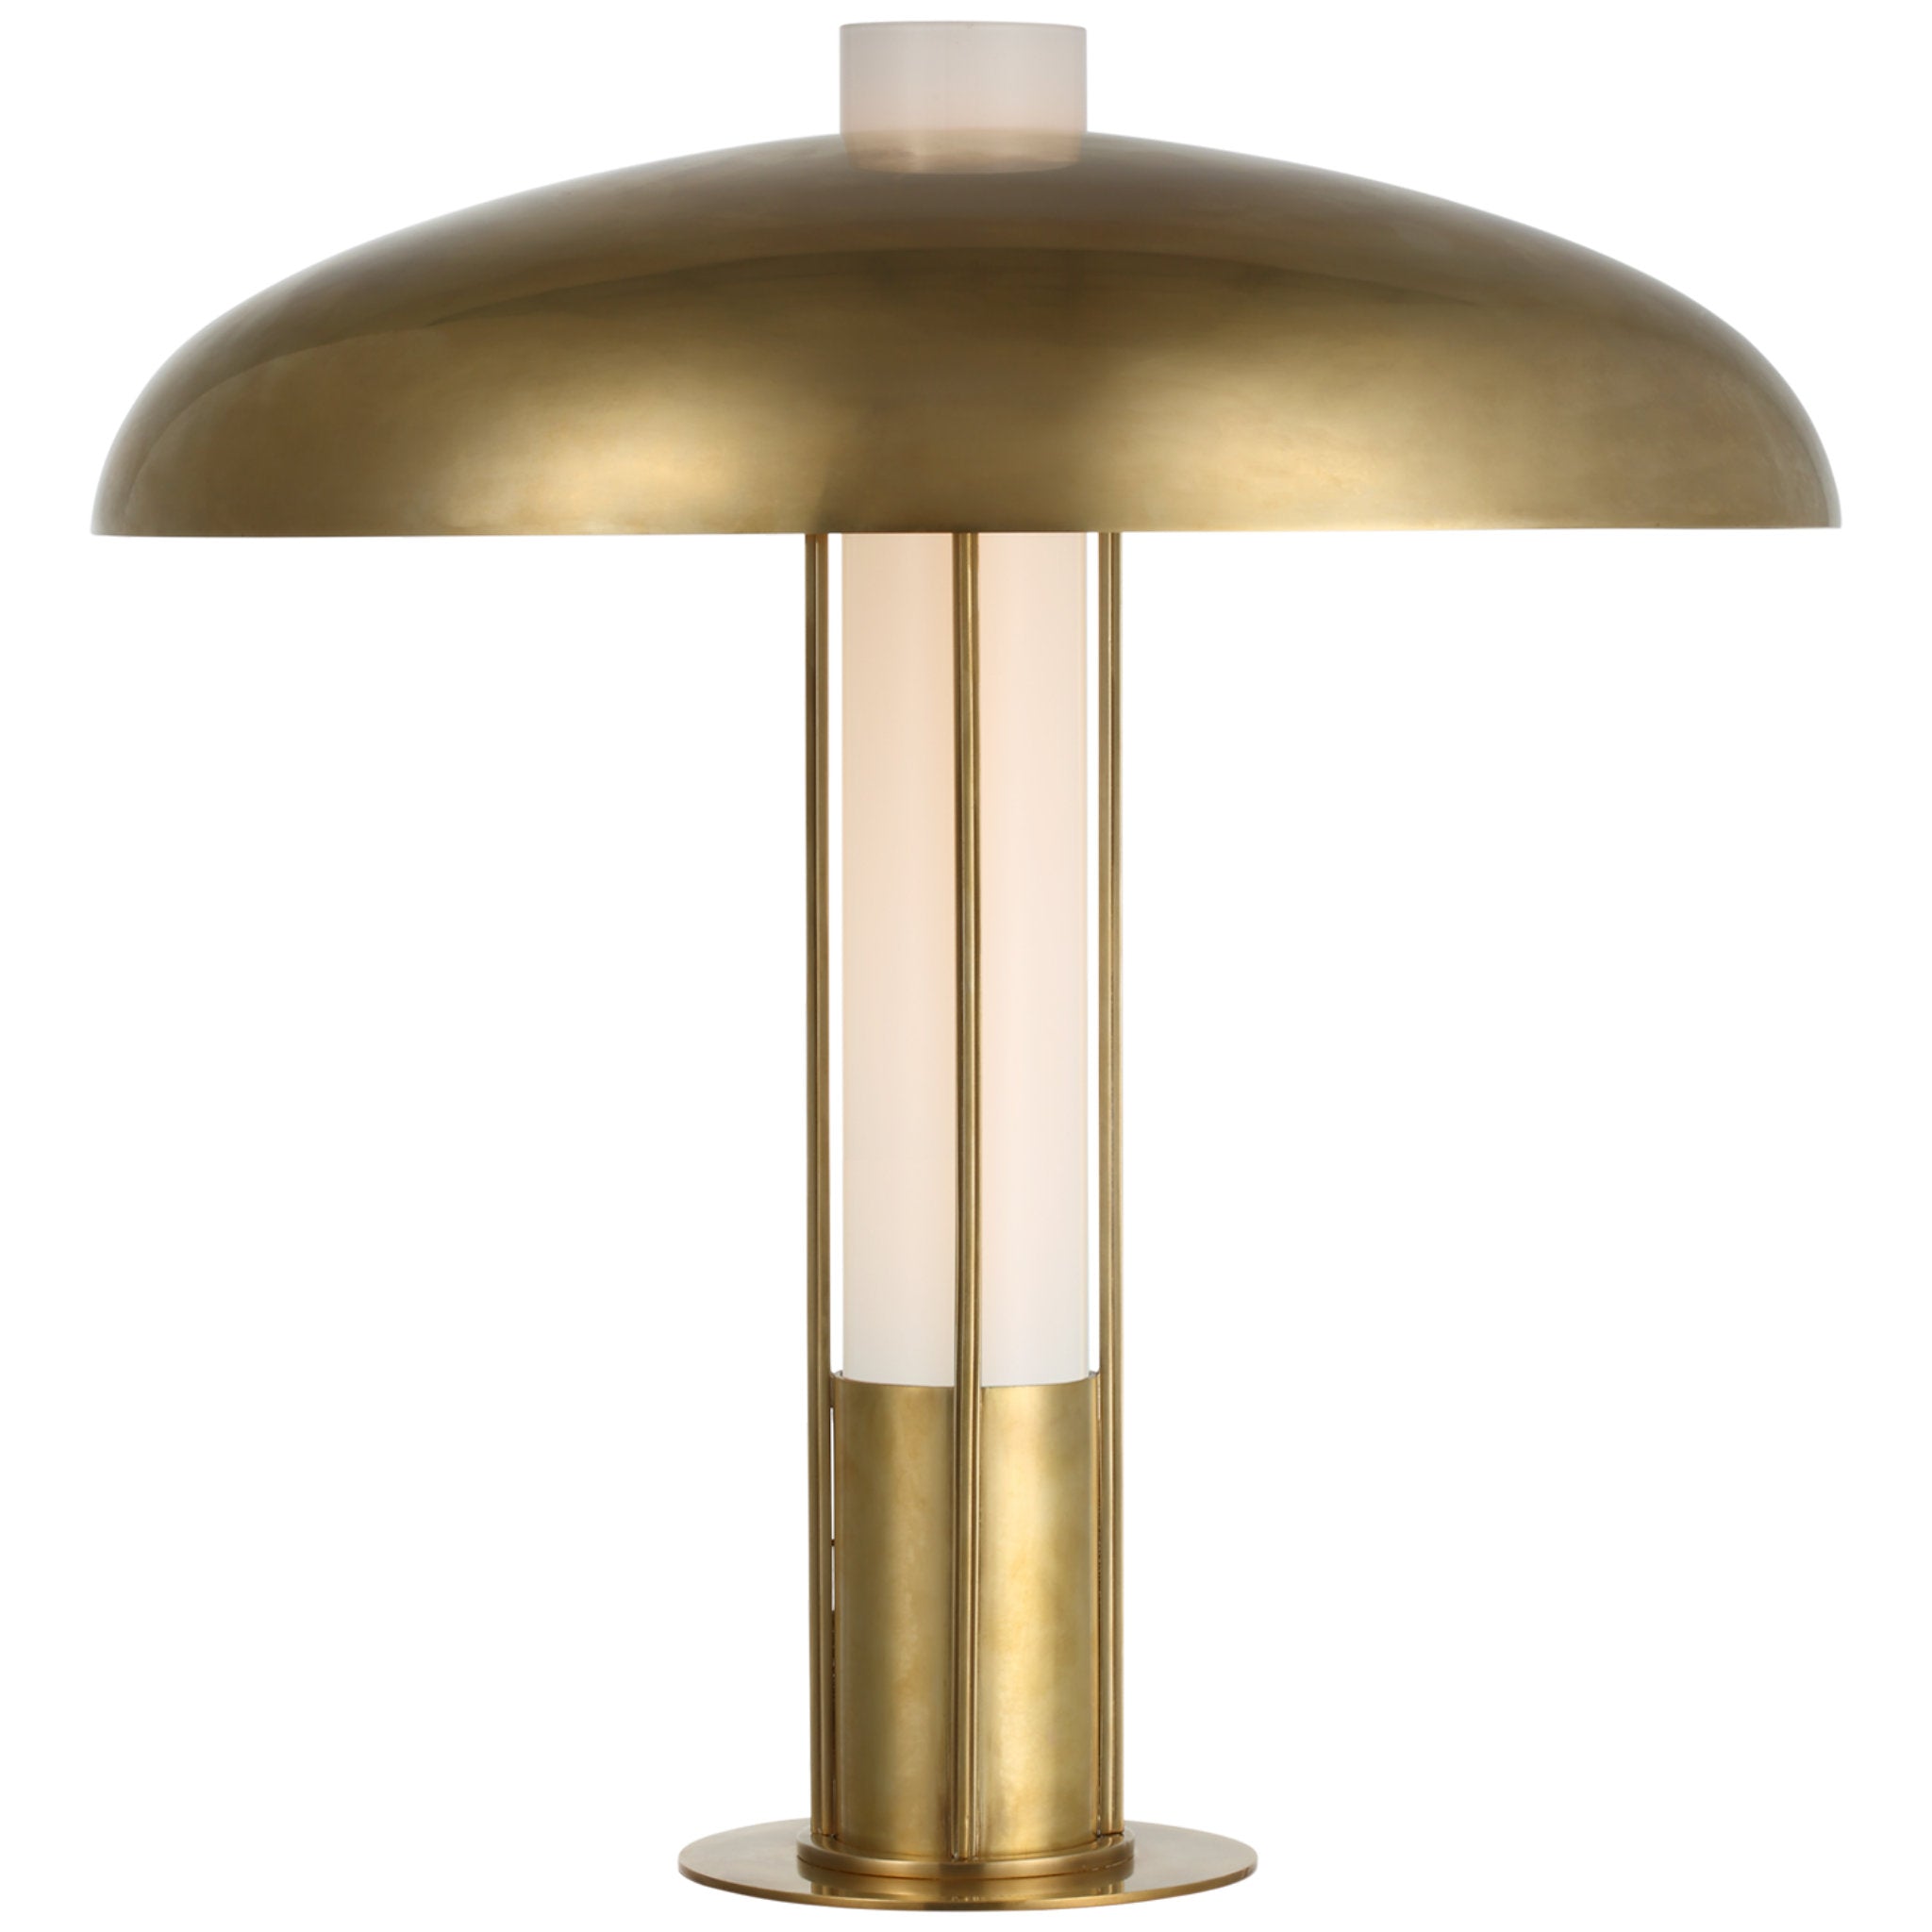 Kelly Wearstler Troye Medium Table Lamp in Antique-Burnished Brass with Antique-Burnished Brass Shade